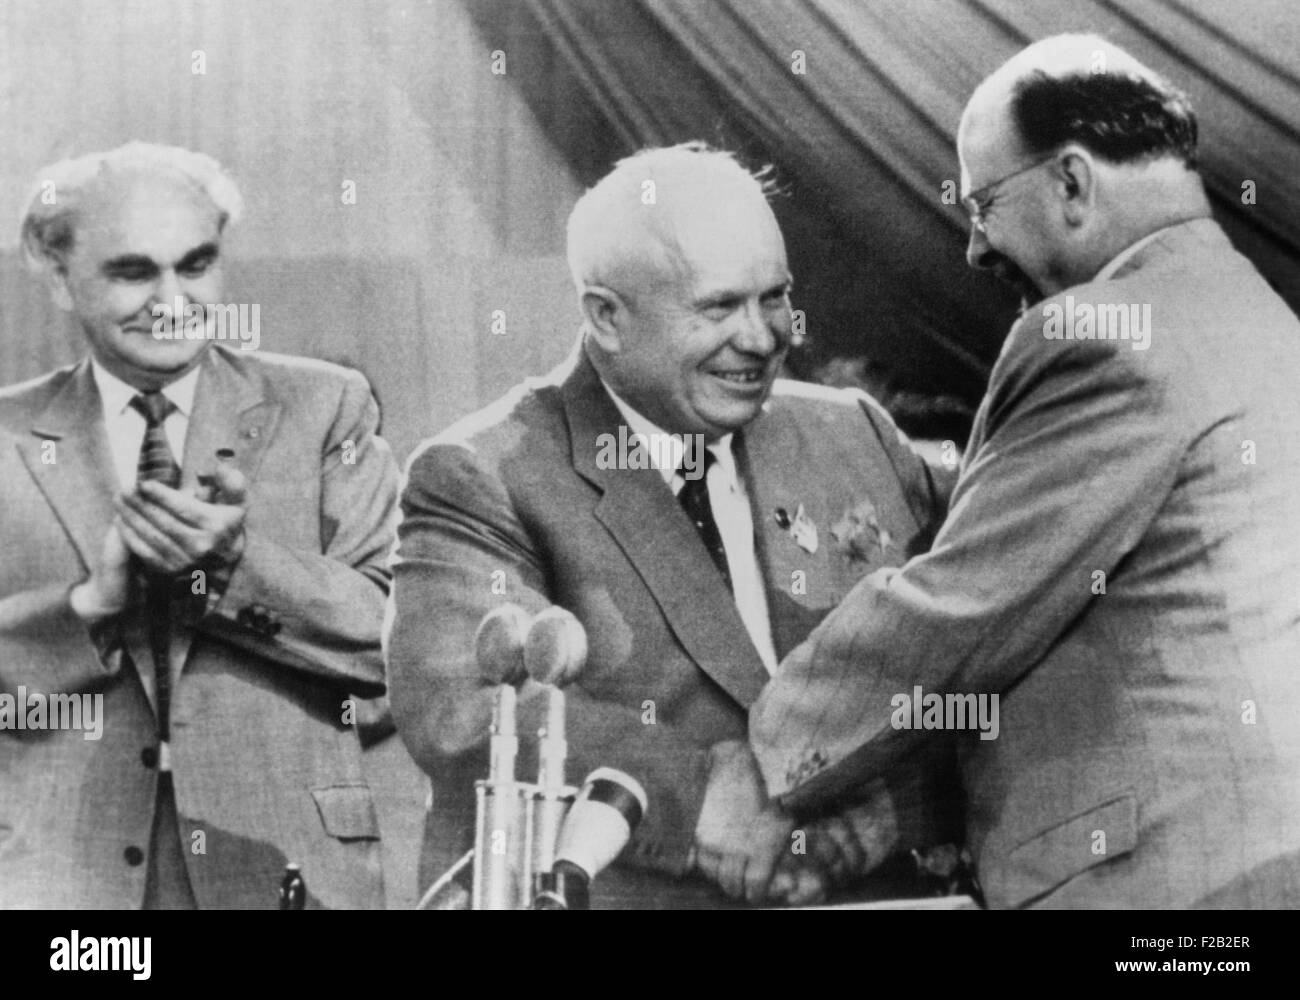 Il Premier sovietico Nikita Khrushchev è congratulato da est tedesco leader comunista Walter Ulbricht. Khrushchev denunciato jugoslavo Josip Tito nazionale "comunismo" che è rimasto al di fuori del Patto di Varsavia. Al congresso dell'Oriente Partito Comunista tedesco a Berlino, luglio 1958. A sinistra è Heinrich Rau, Tedesco orientale Politburo. (CSU 2015 8 542) Foto Stock